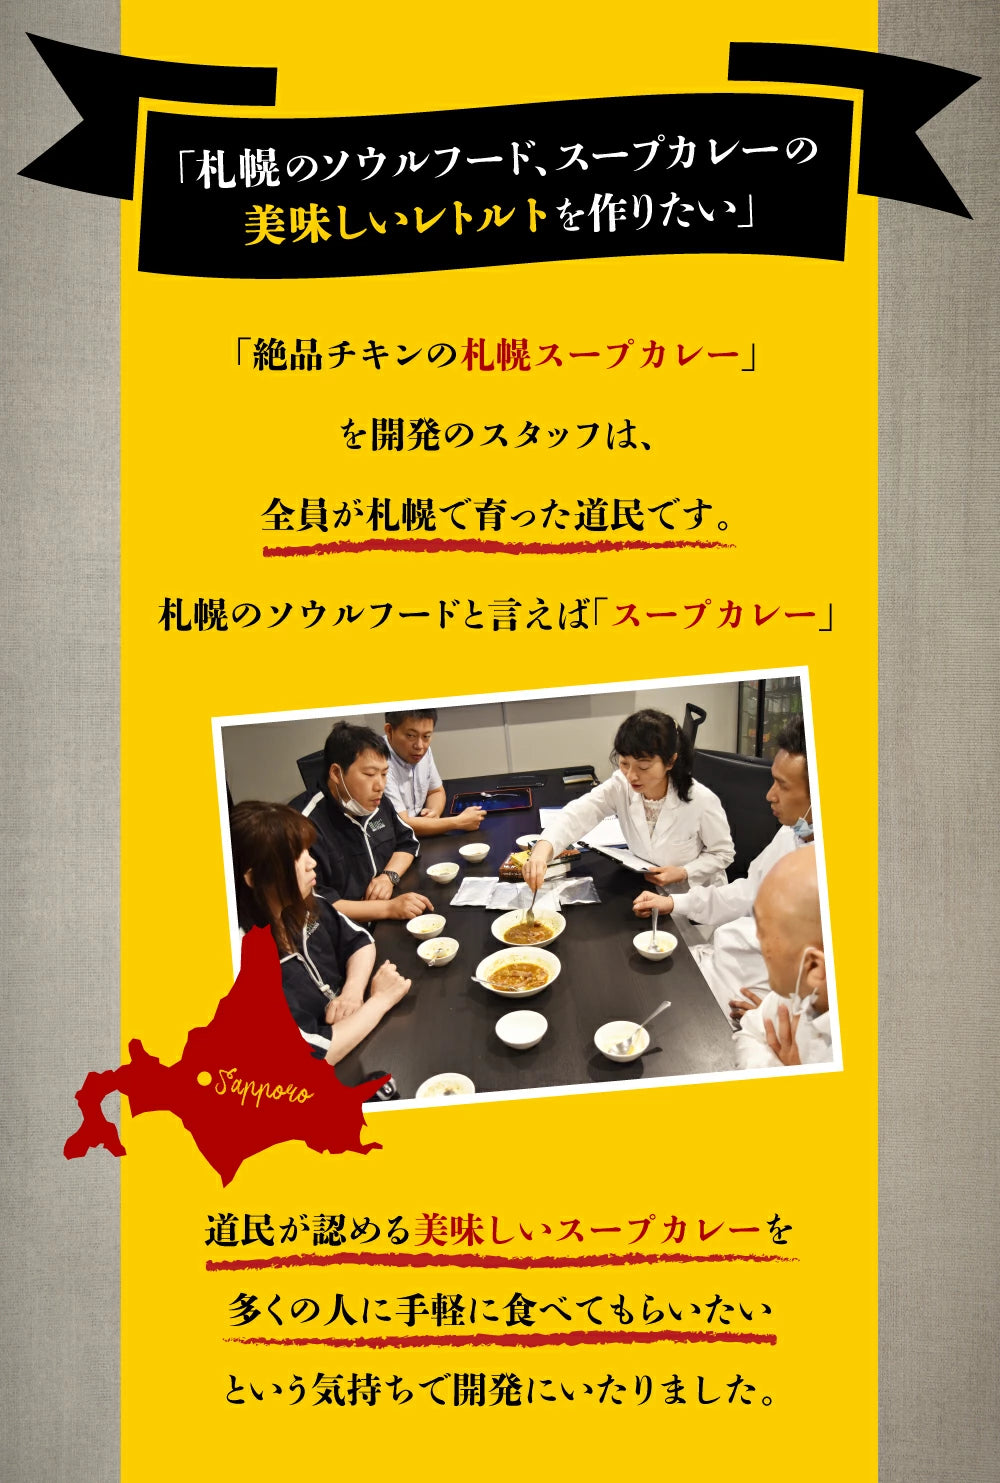 絶品チキンの札幌スープカレー 300g×2食セット レトルト 保存食にも 送料無料